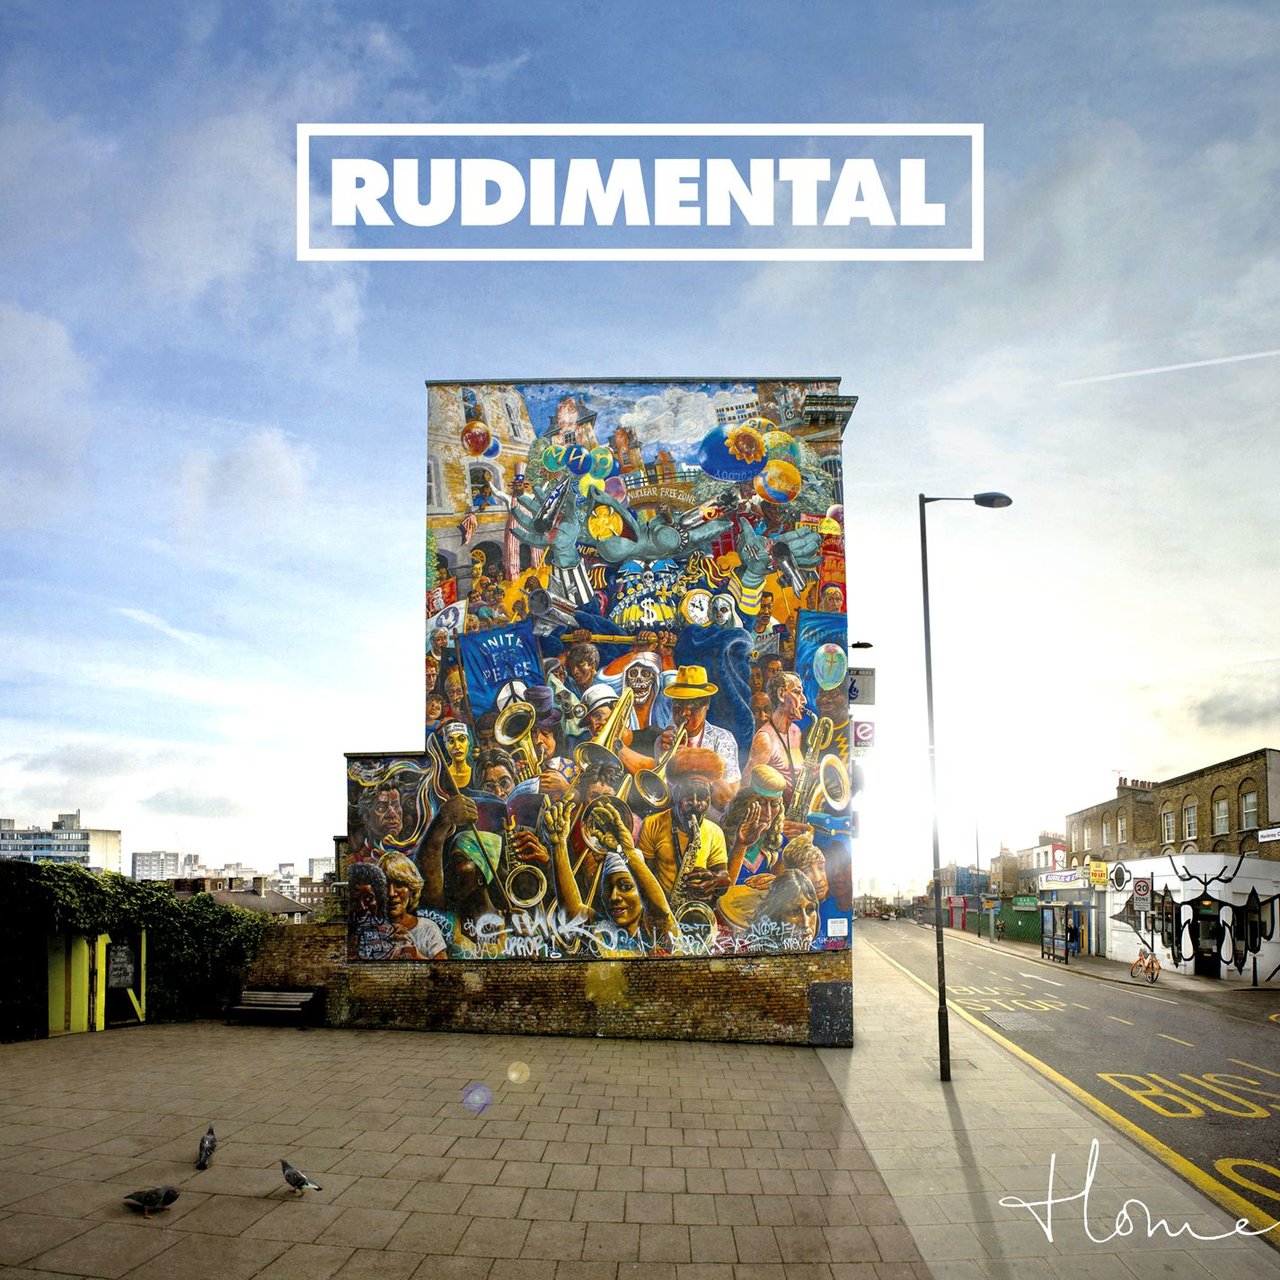 Rudimental featuring Emeli Sandé & Nas — Free (Remix) cover artwork